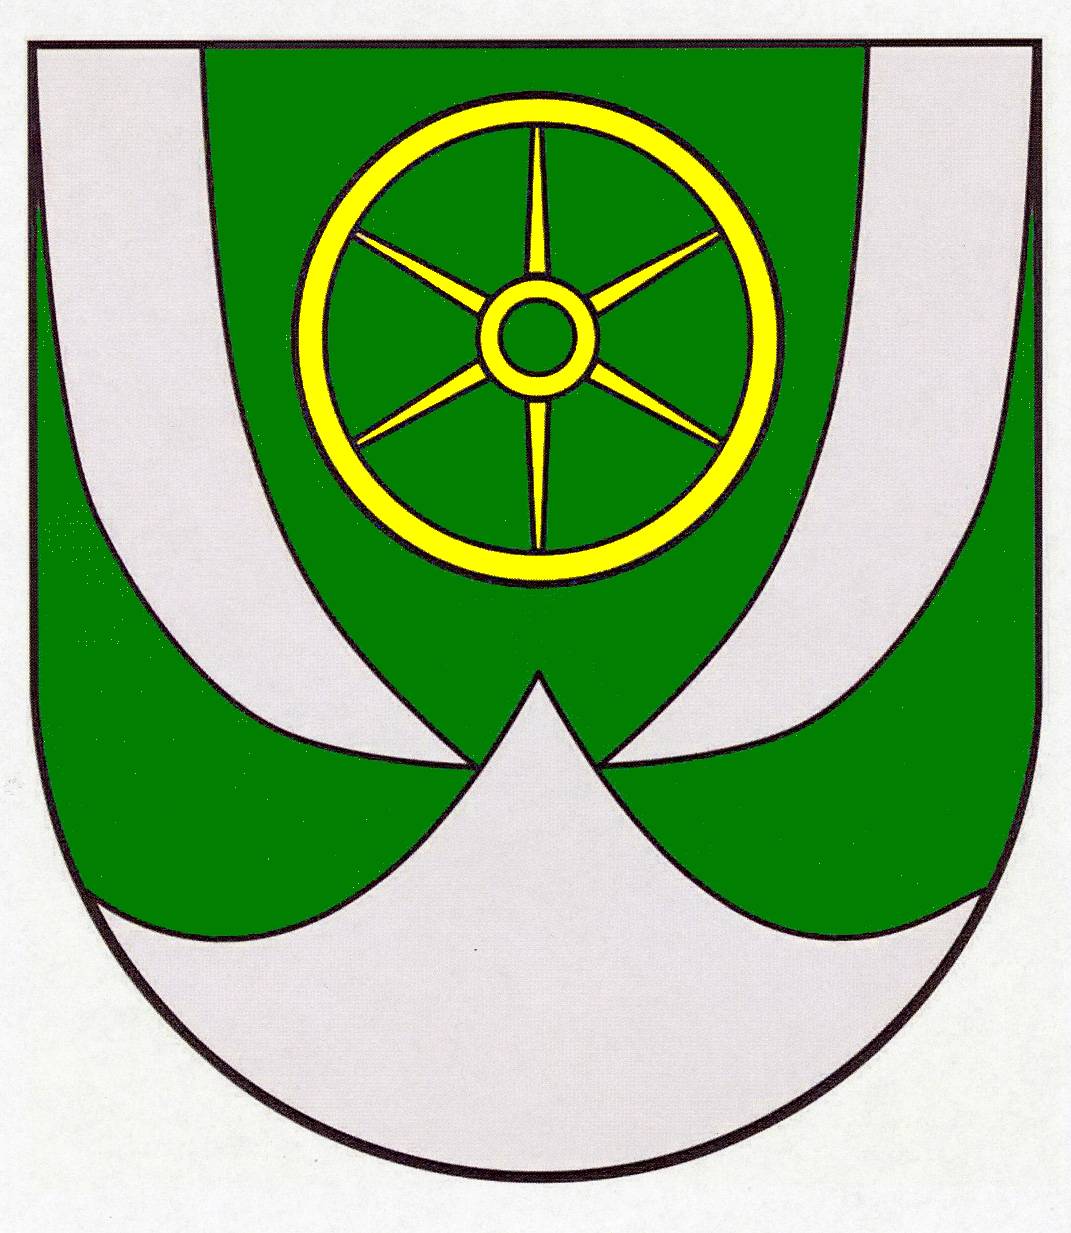 Wappen Amt Boostedt-Rickling, Kreis Segeberg